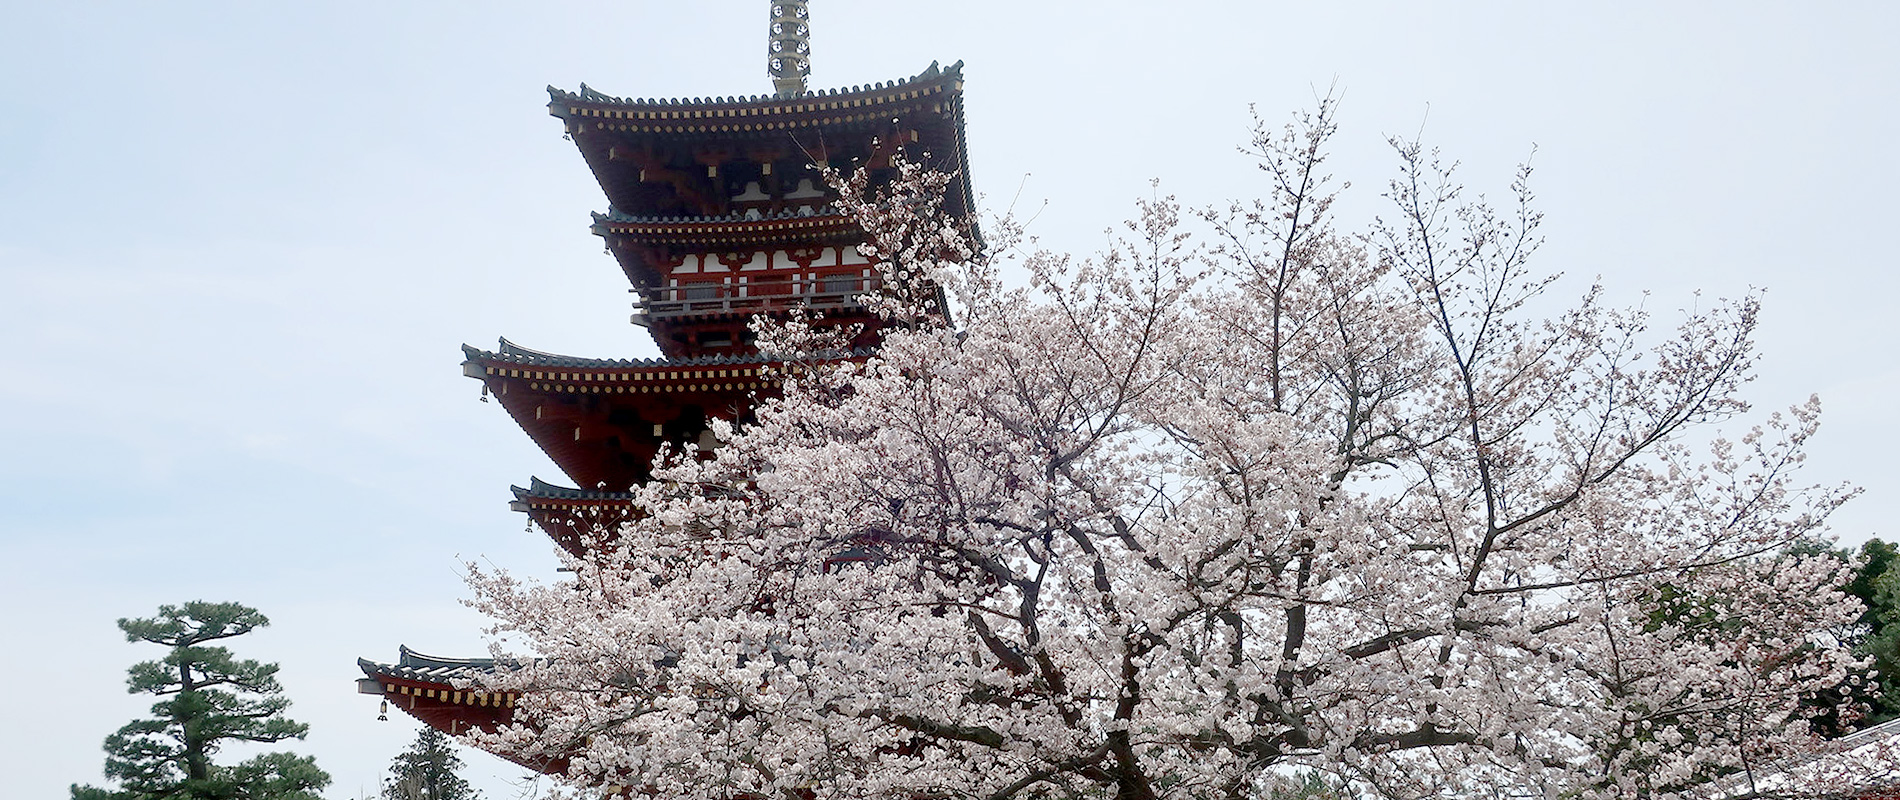 「もう１度奈良へ行きたい」と思っていただけるようなガイドを心がけています。